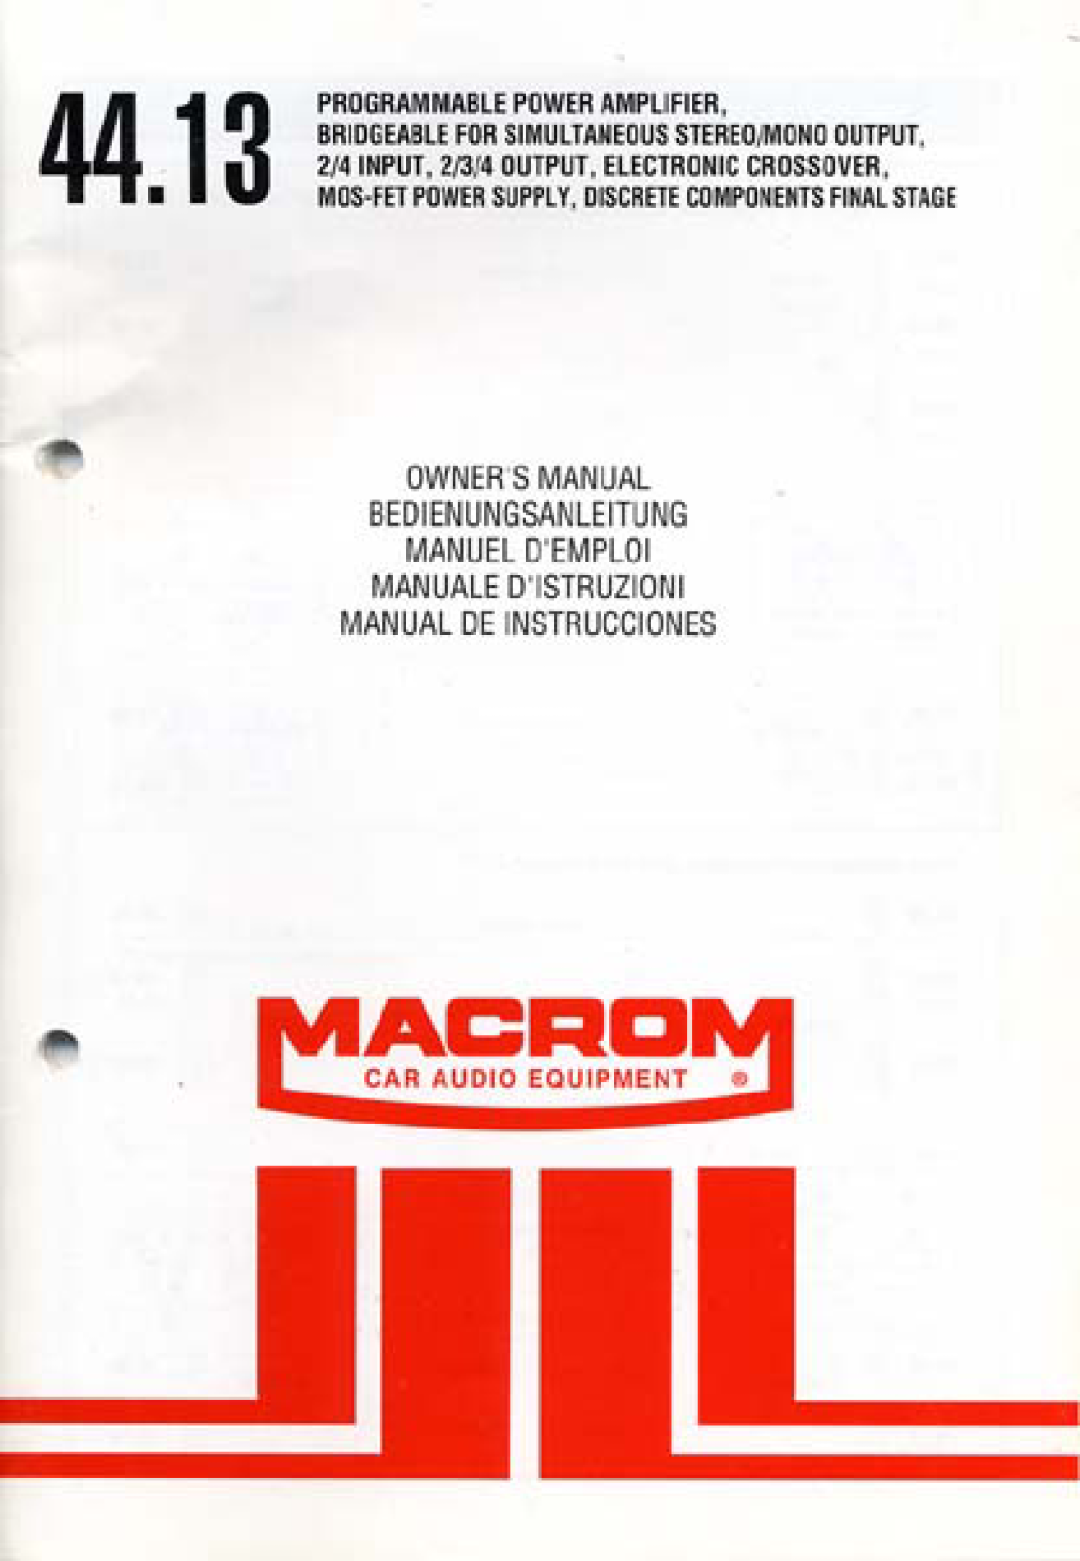 Macrom 44.13 manual 